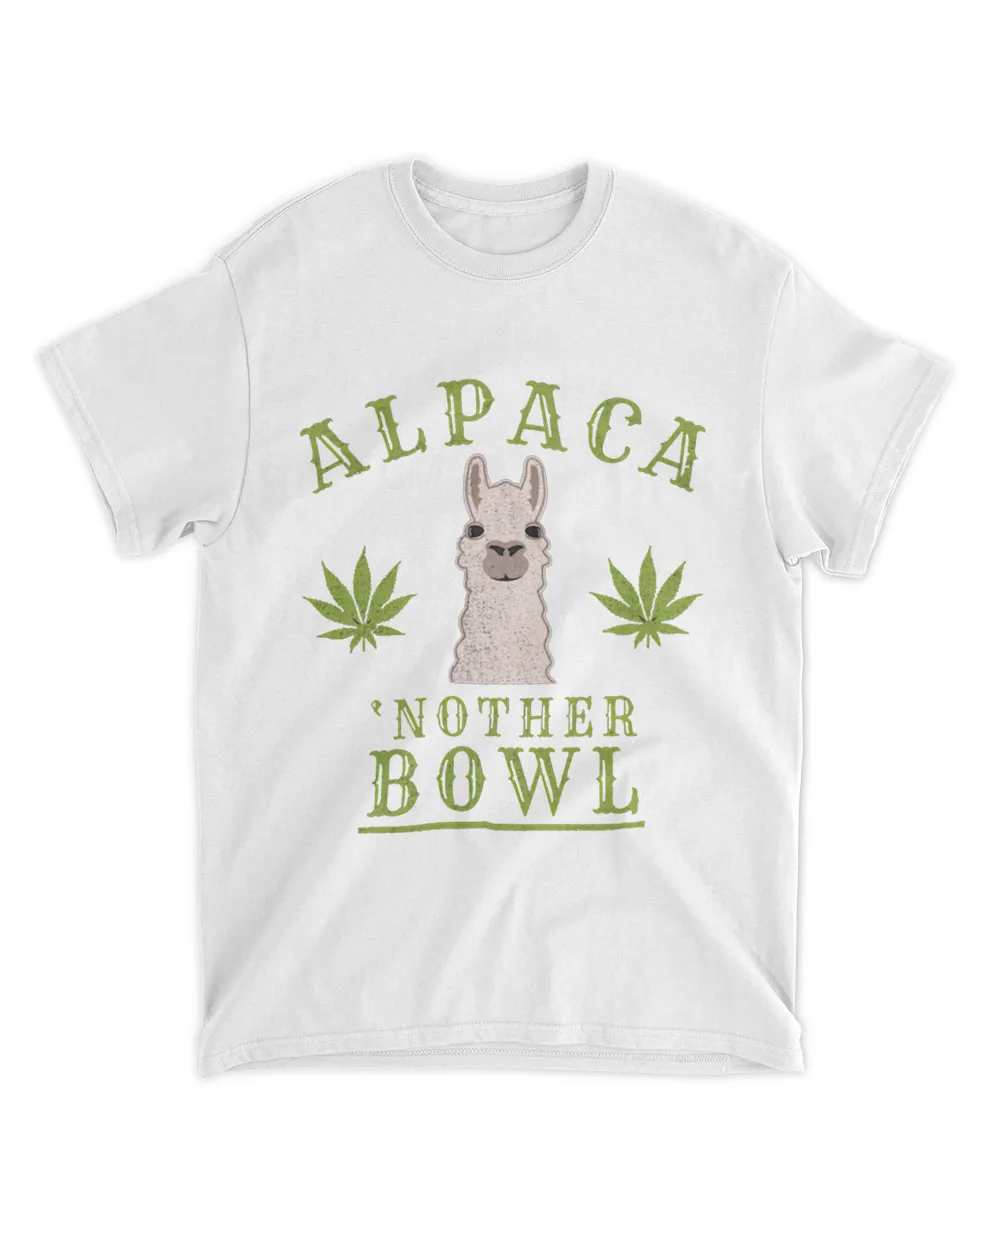 Alpaca Nother Bowl Shirt